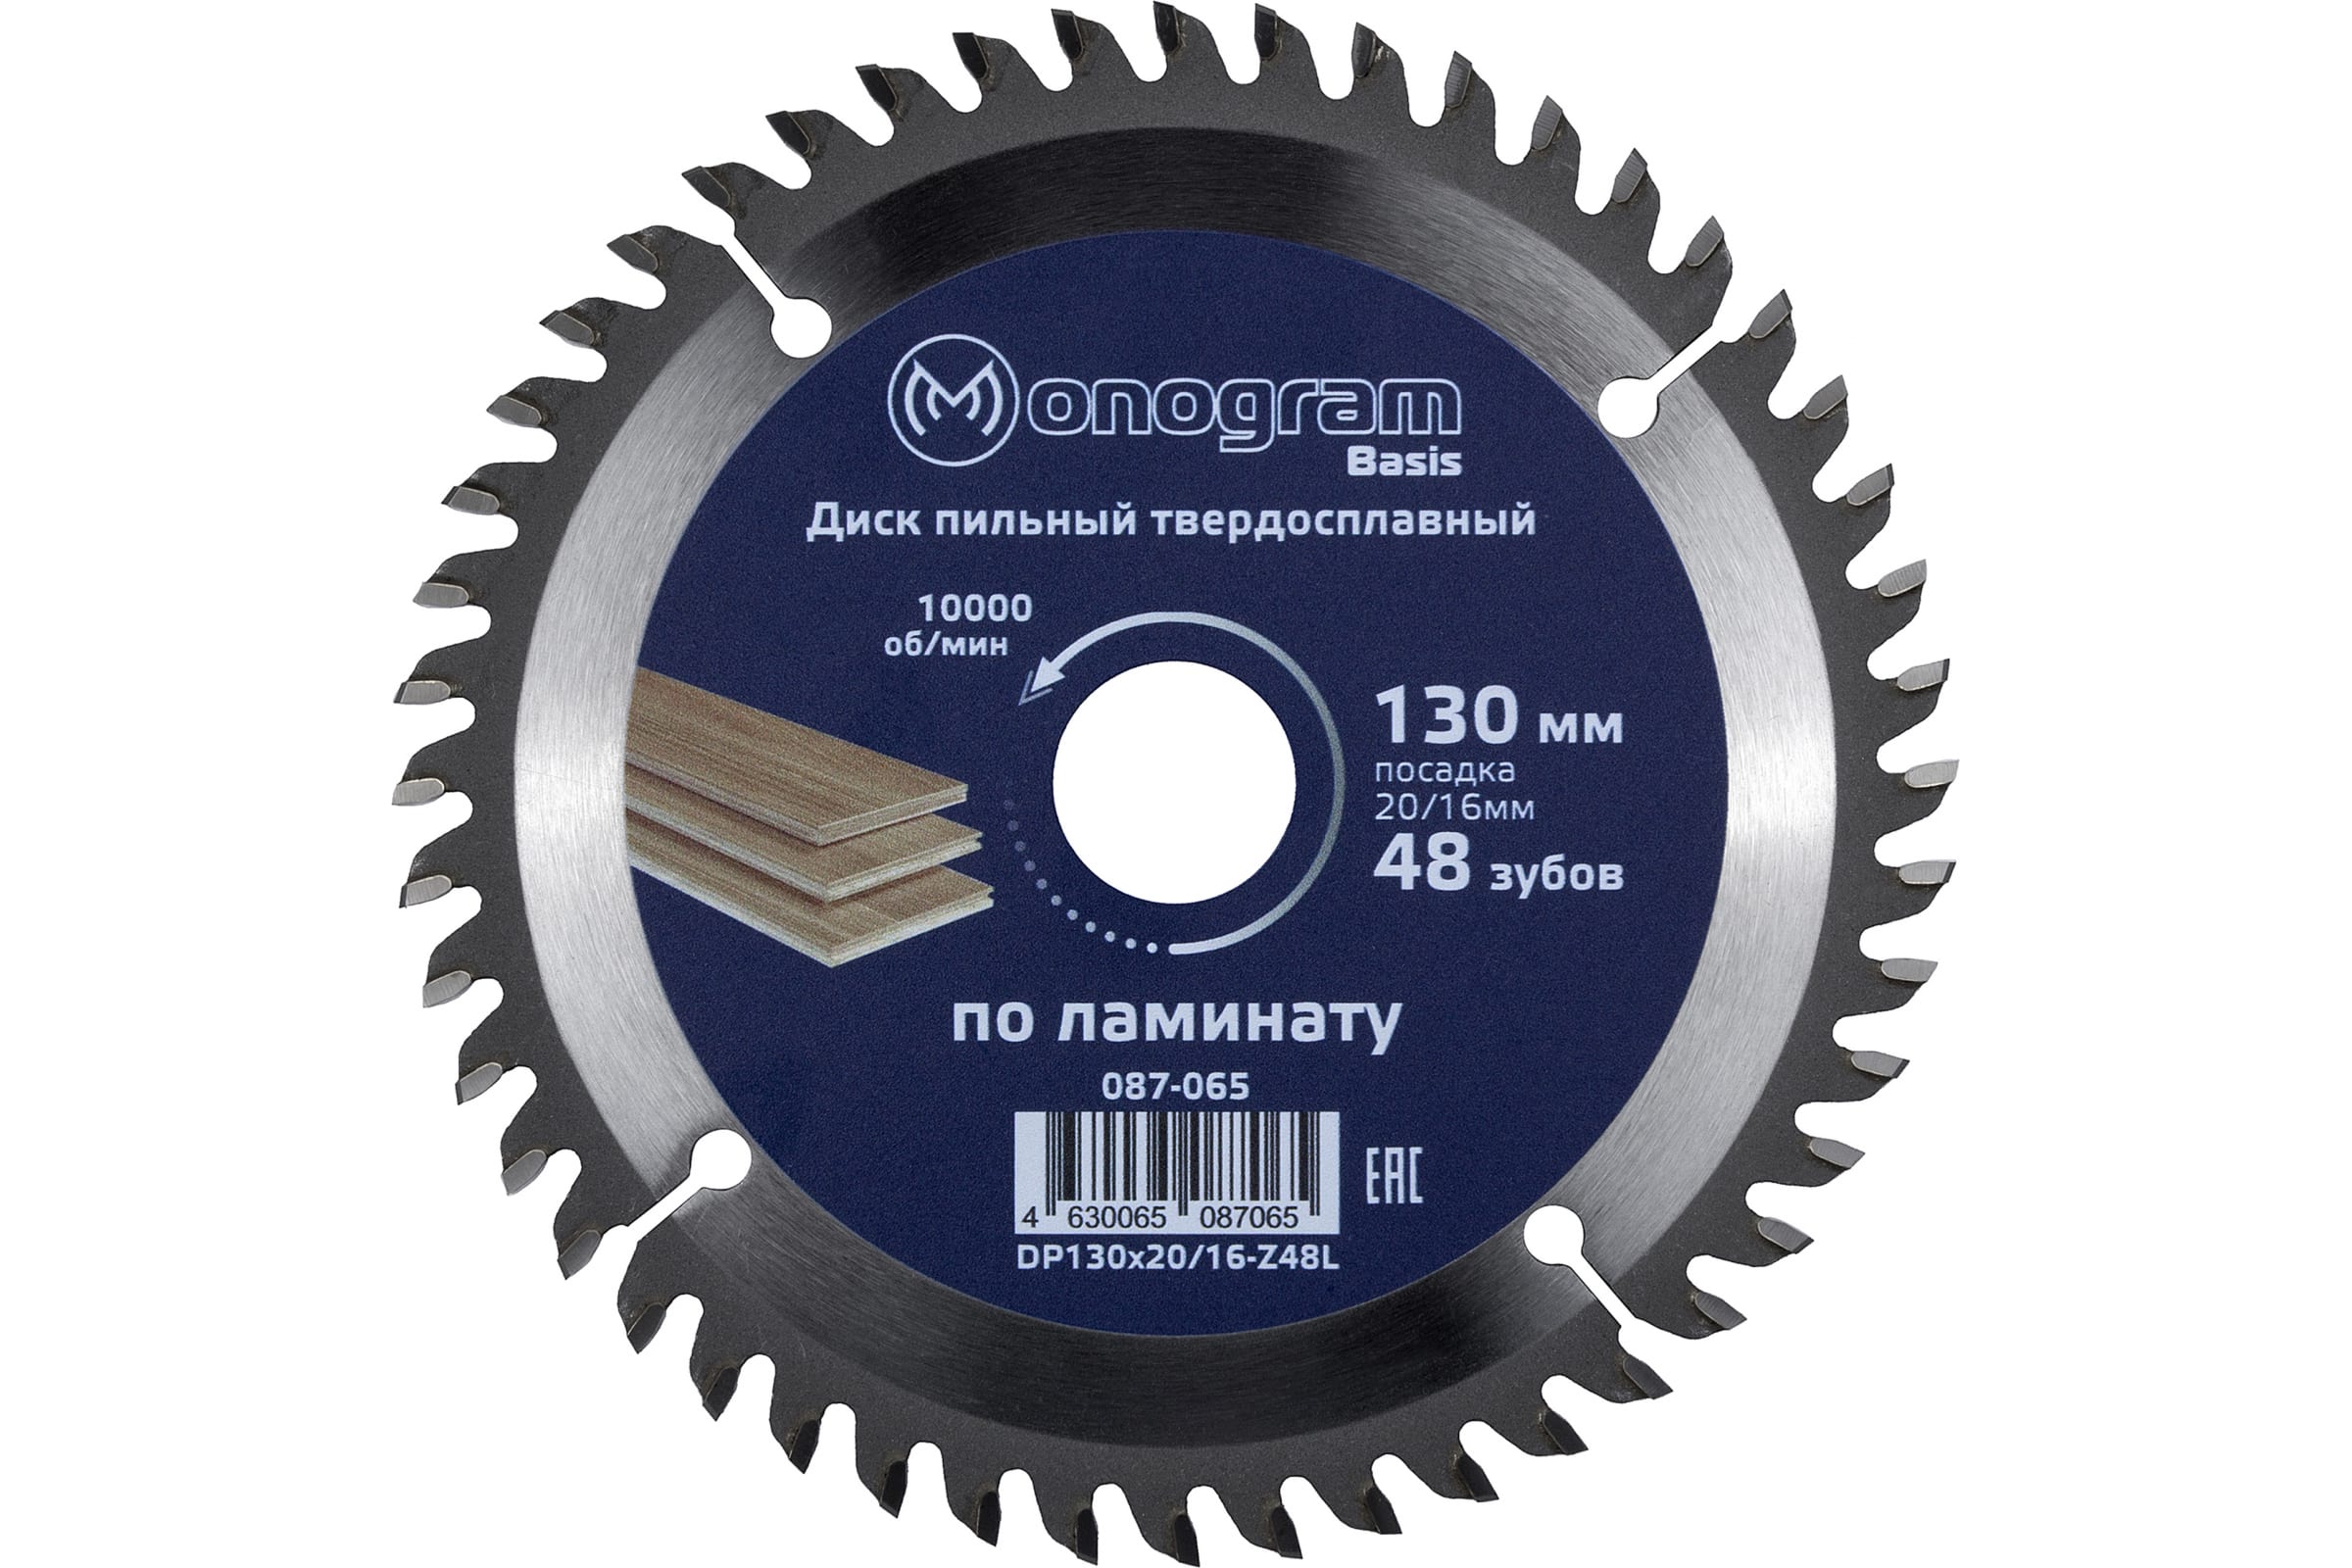 MONOGRAM Диск пильный твердосплавный Basis 130х20/16мм, 48 зубов 087-065